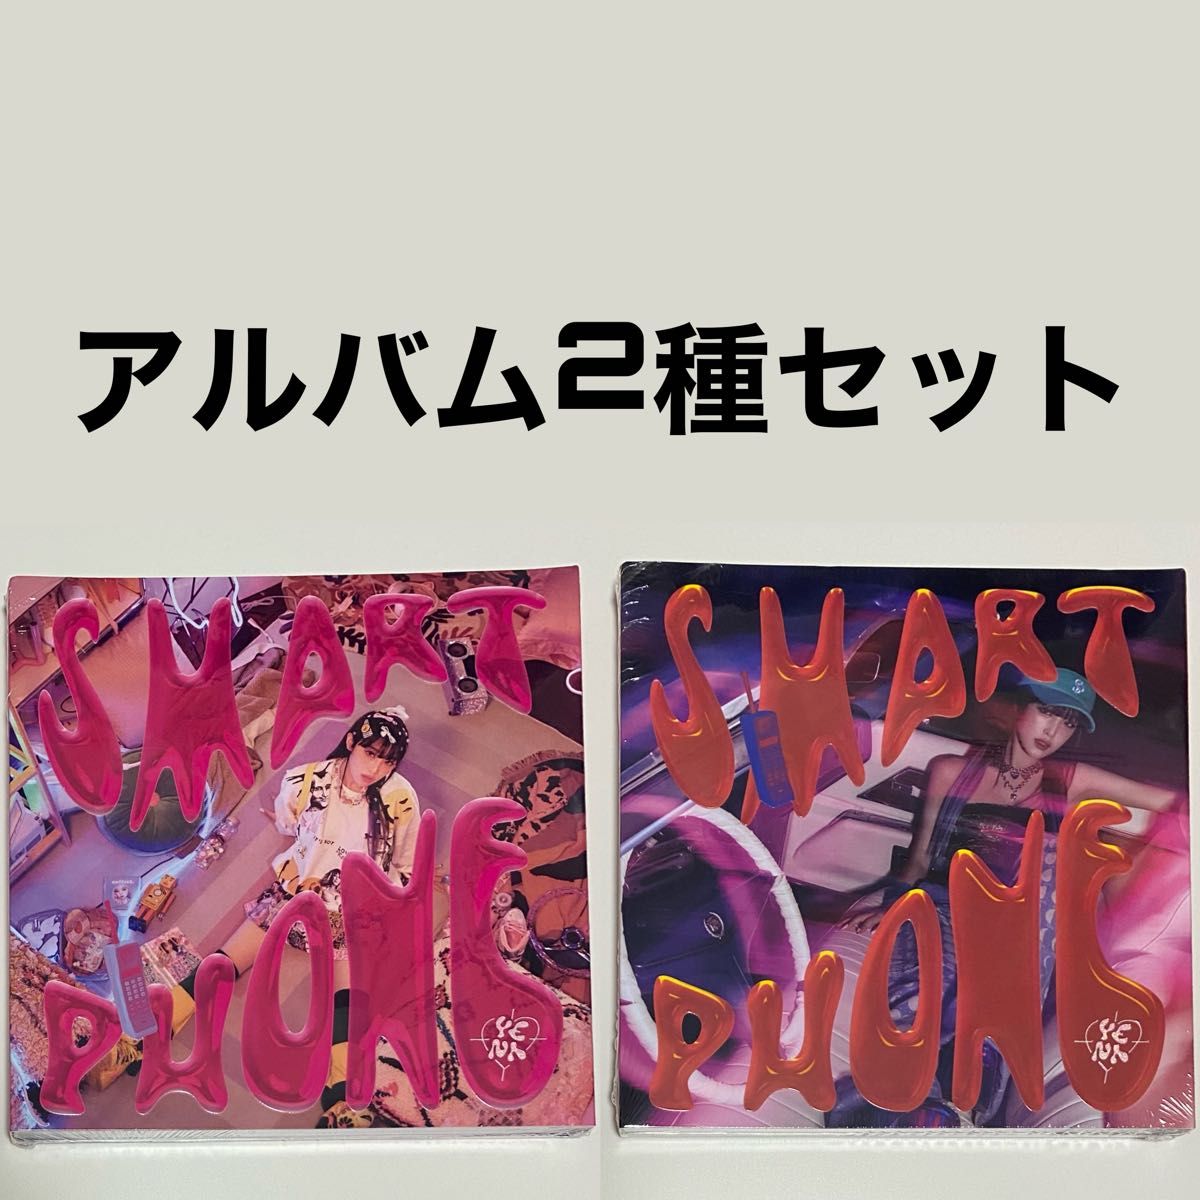 イェナ SMARTPHONE 2種セット アルバム 開封済み CD